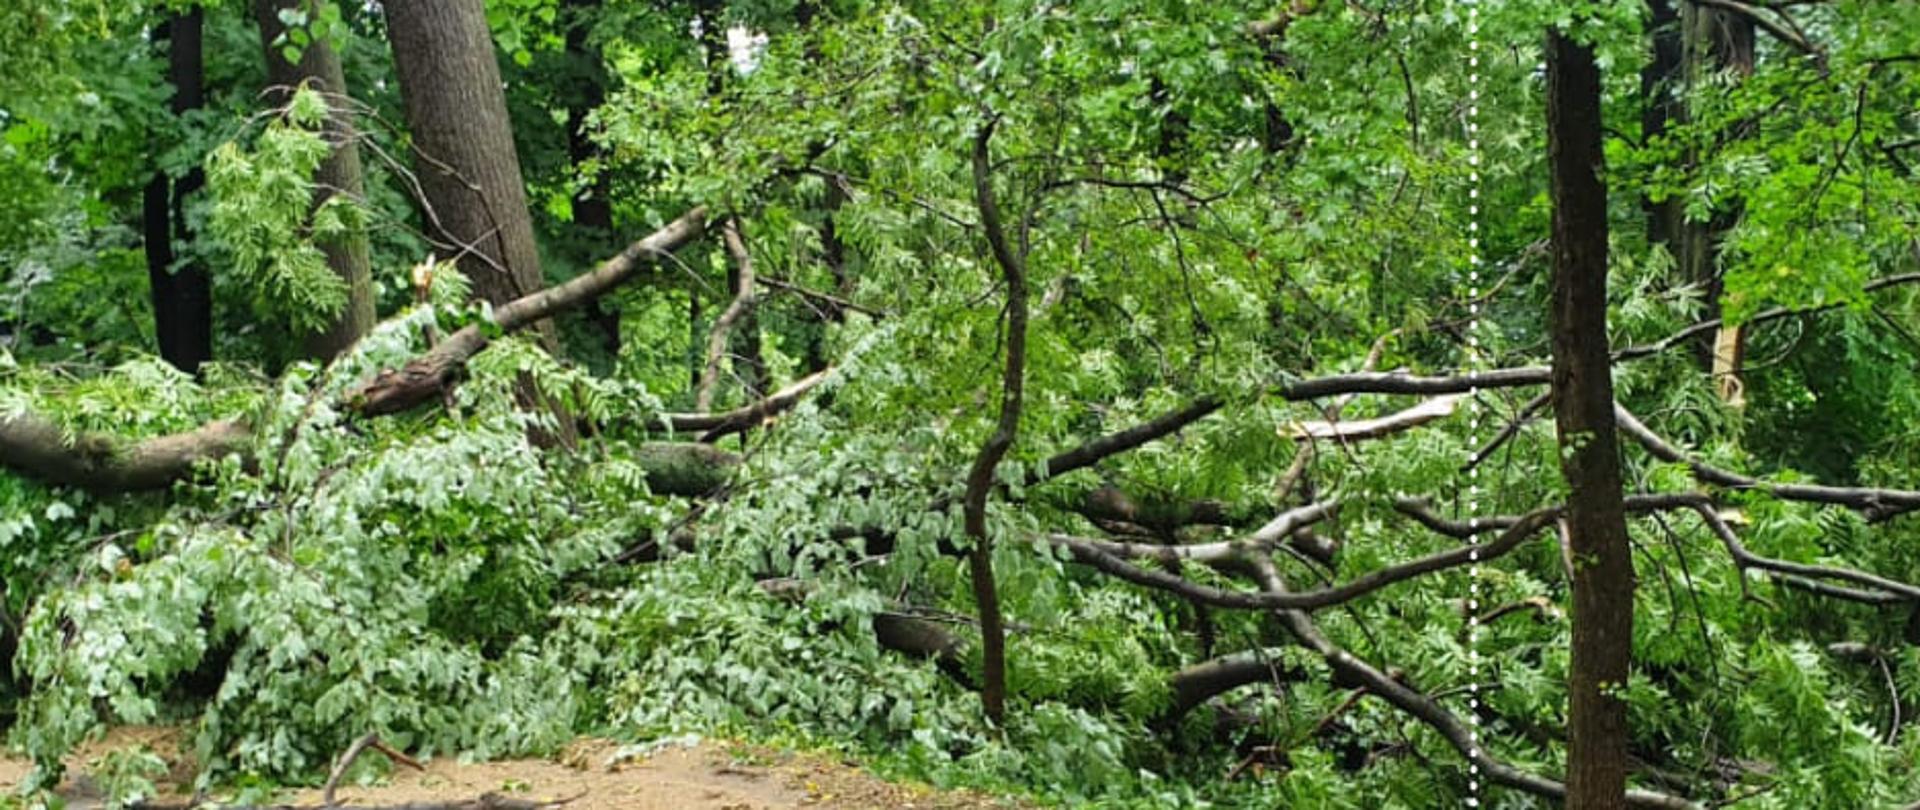 Obraz przedstawia powalone drzewo po nawałnicy